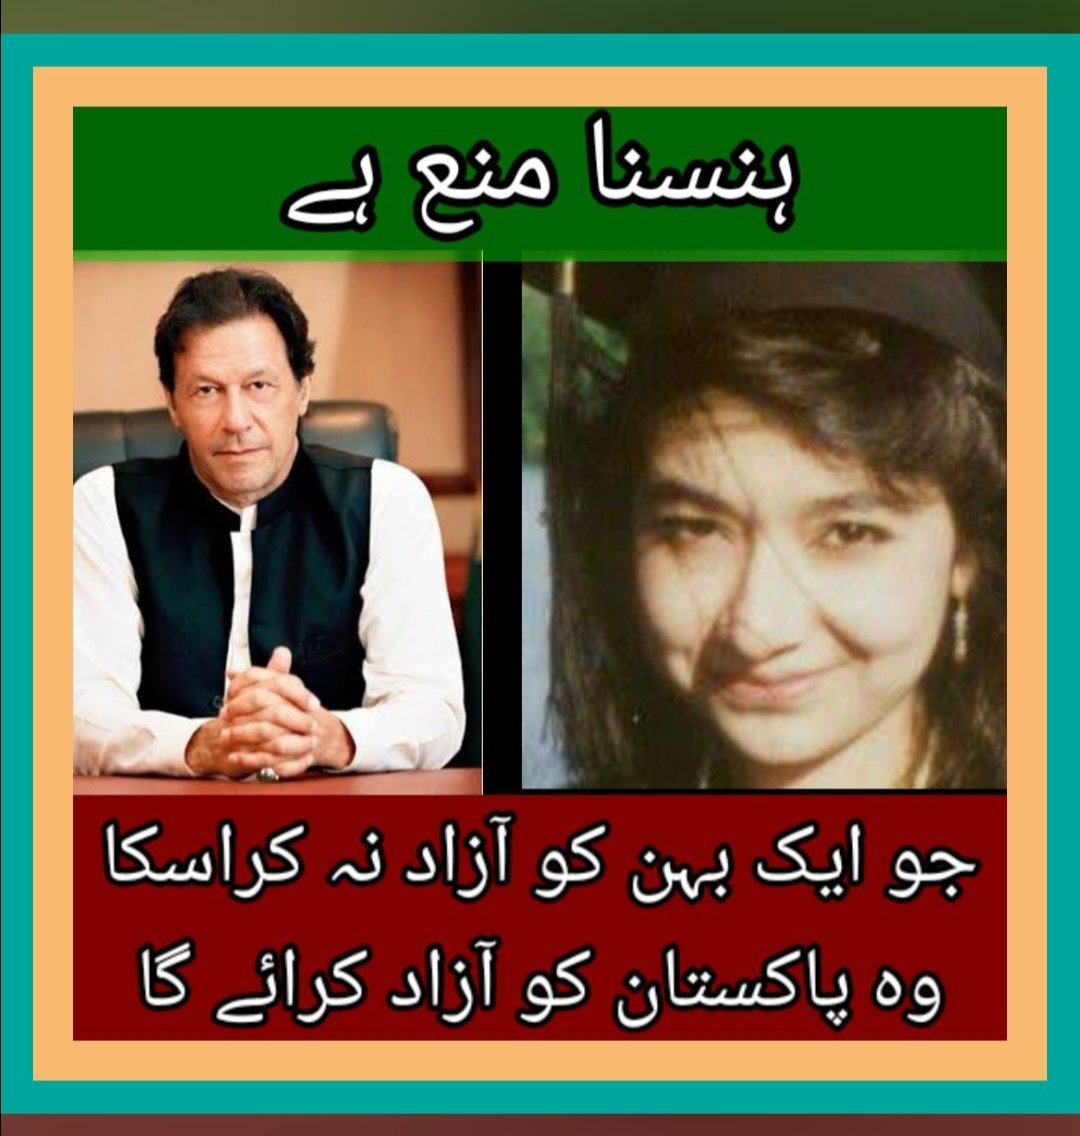 جو ایک بے گناہ پاکستانی کو آزادی نہیں دلا سکا وہ قوم کو کیسے رہاٸ دلاۓ گا؟ 
#Aafia #AafiaSiddiqui #Pakistan